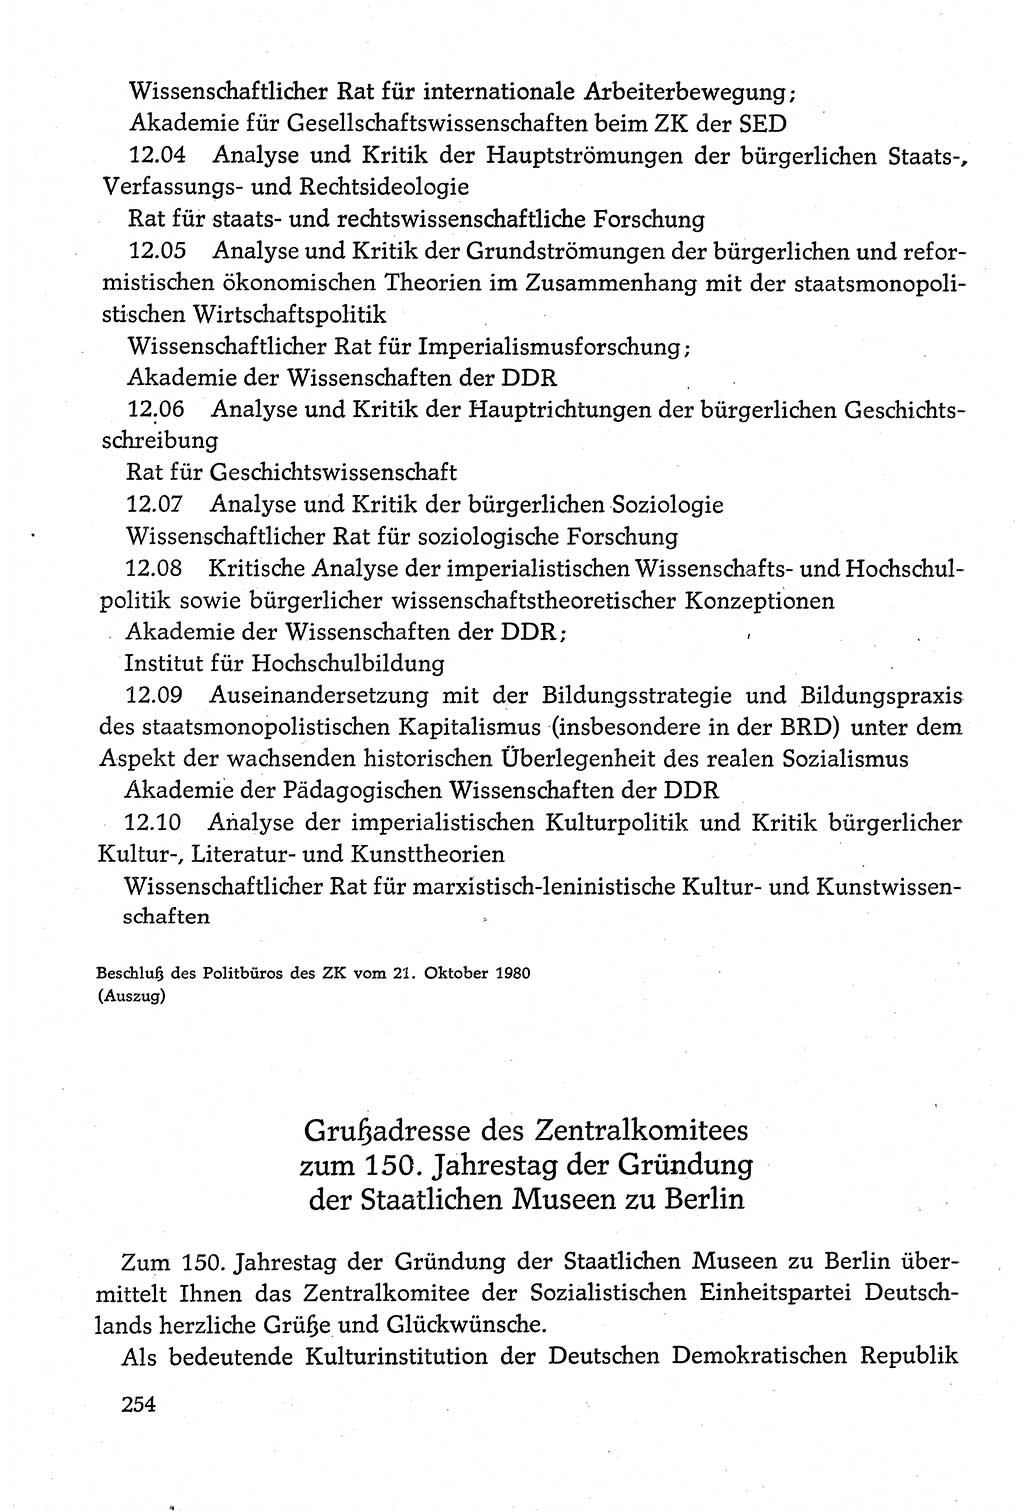 Dokumente der Sozialistischen Einheitspartei Deutschlands (SED) [Deutsche Demokratische Republik (DDR)] 1980-1981, Seite 254 (Dok. SED DDR 1980-1981, S. 254)